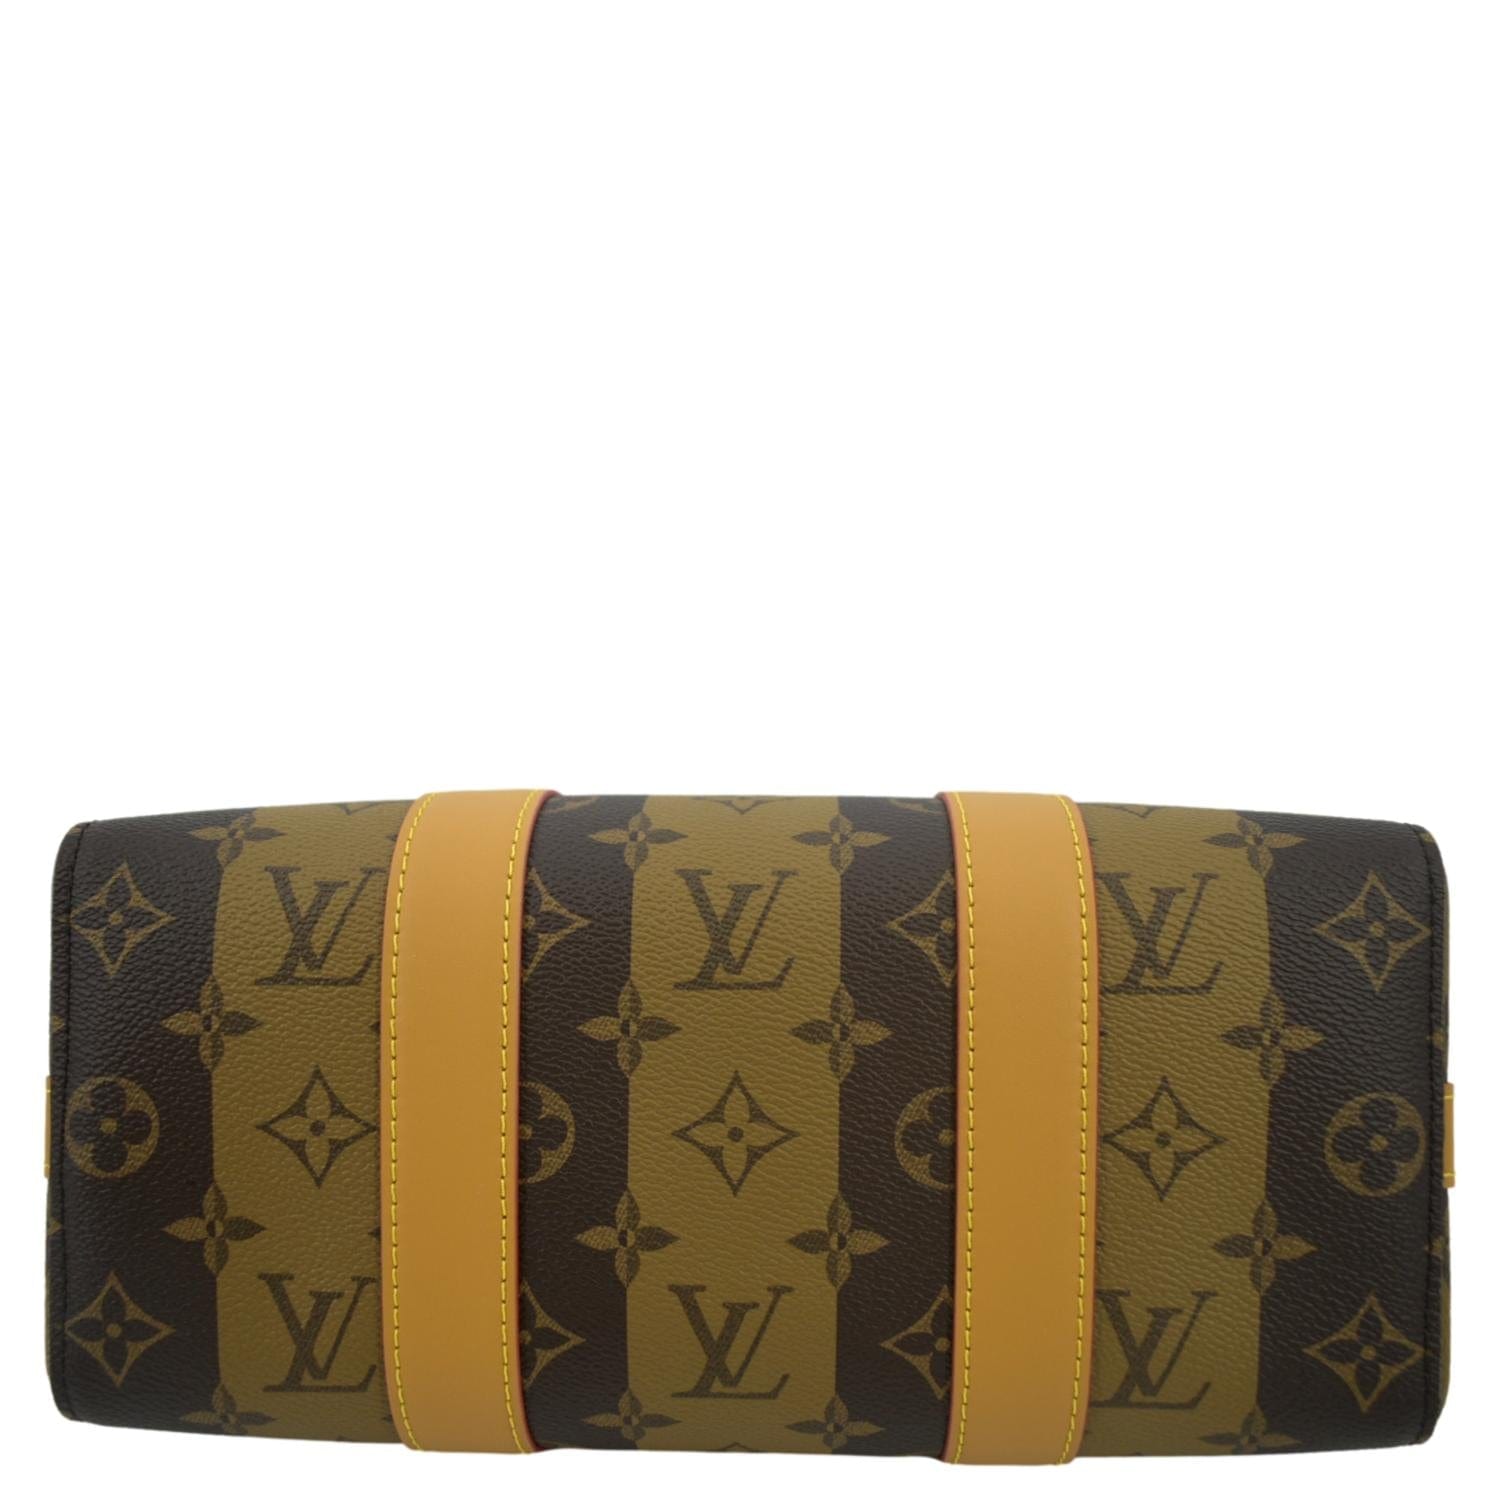 Louis Vuitton x NIGO Monogram Stripes City Keepall - Brown